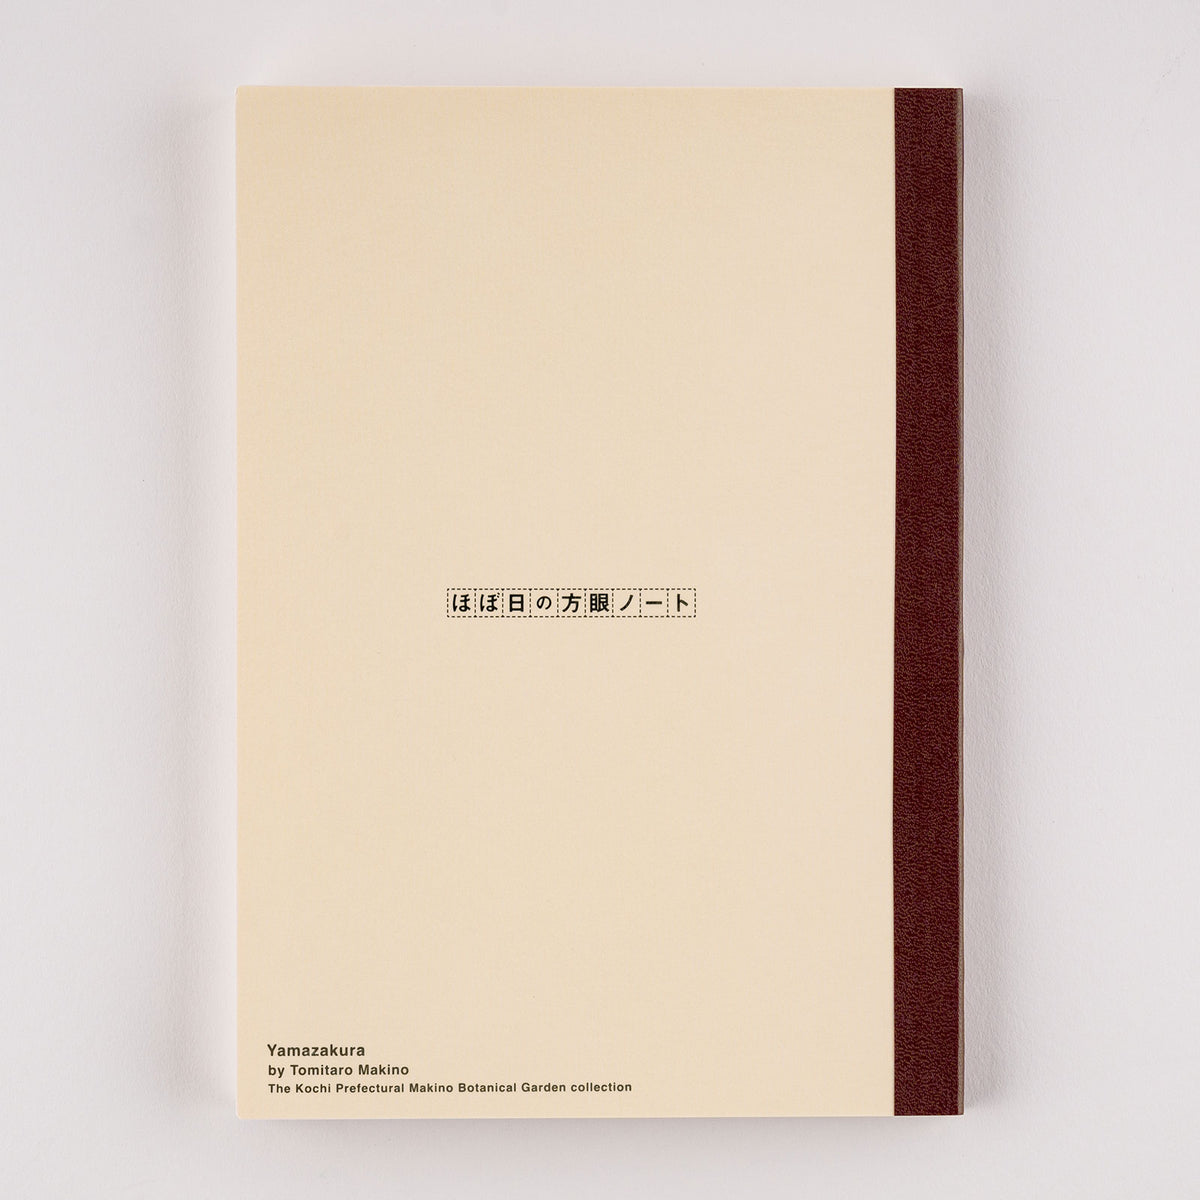 Hobonichi Plain Notebook (A5) Yamazakura    at Boston General Store